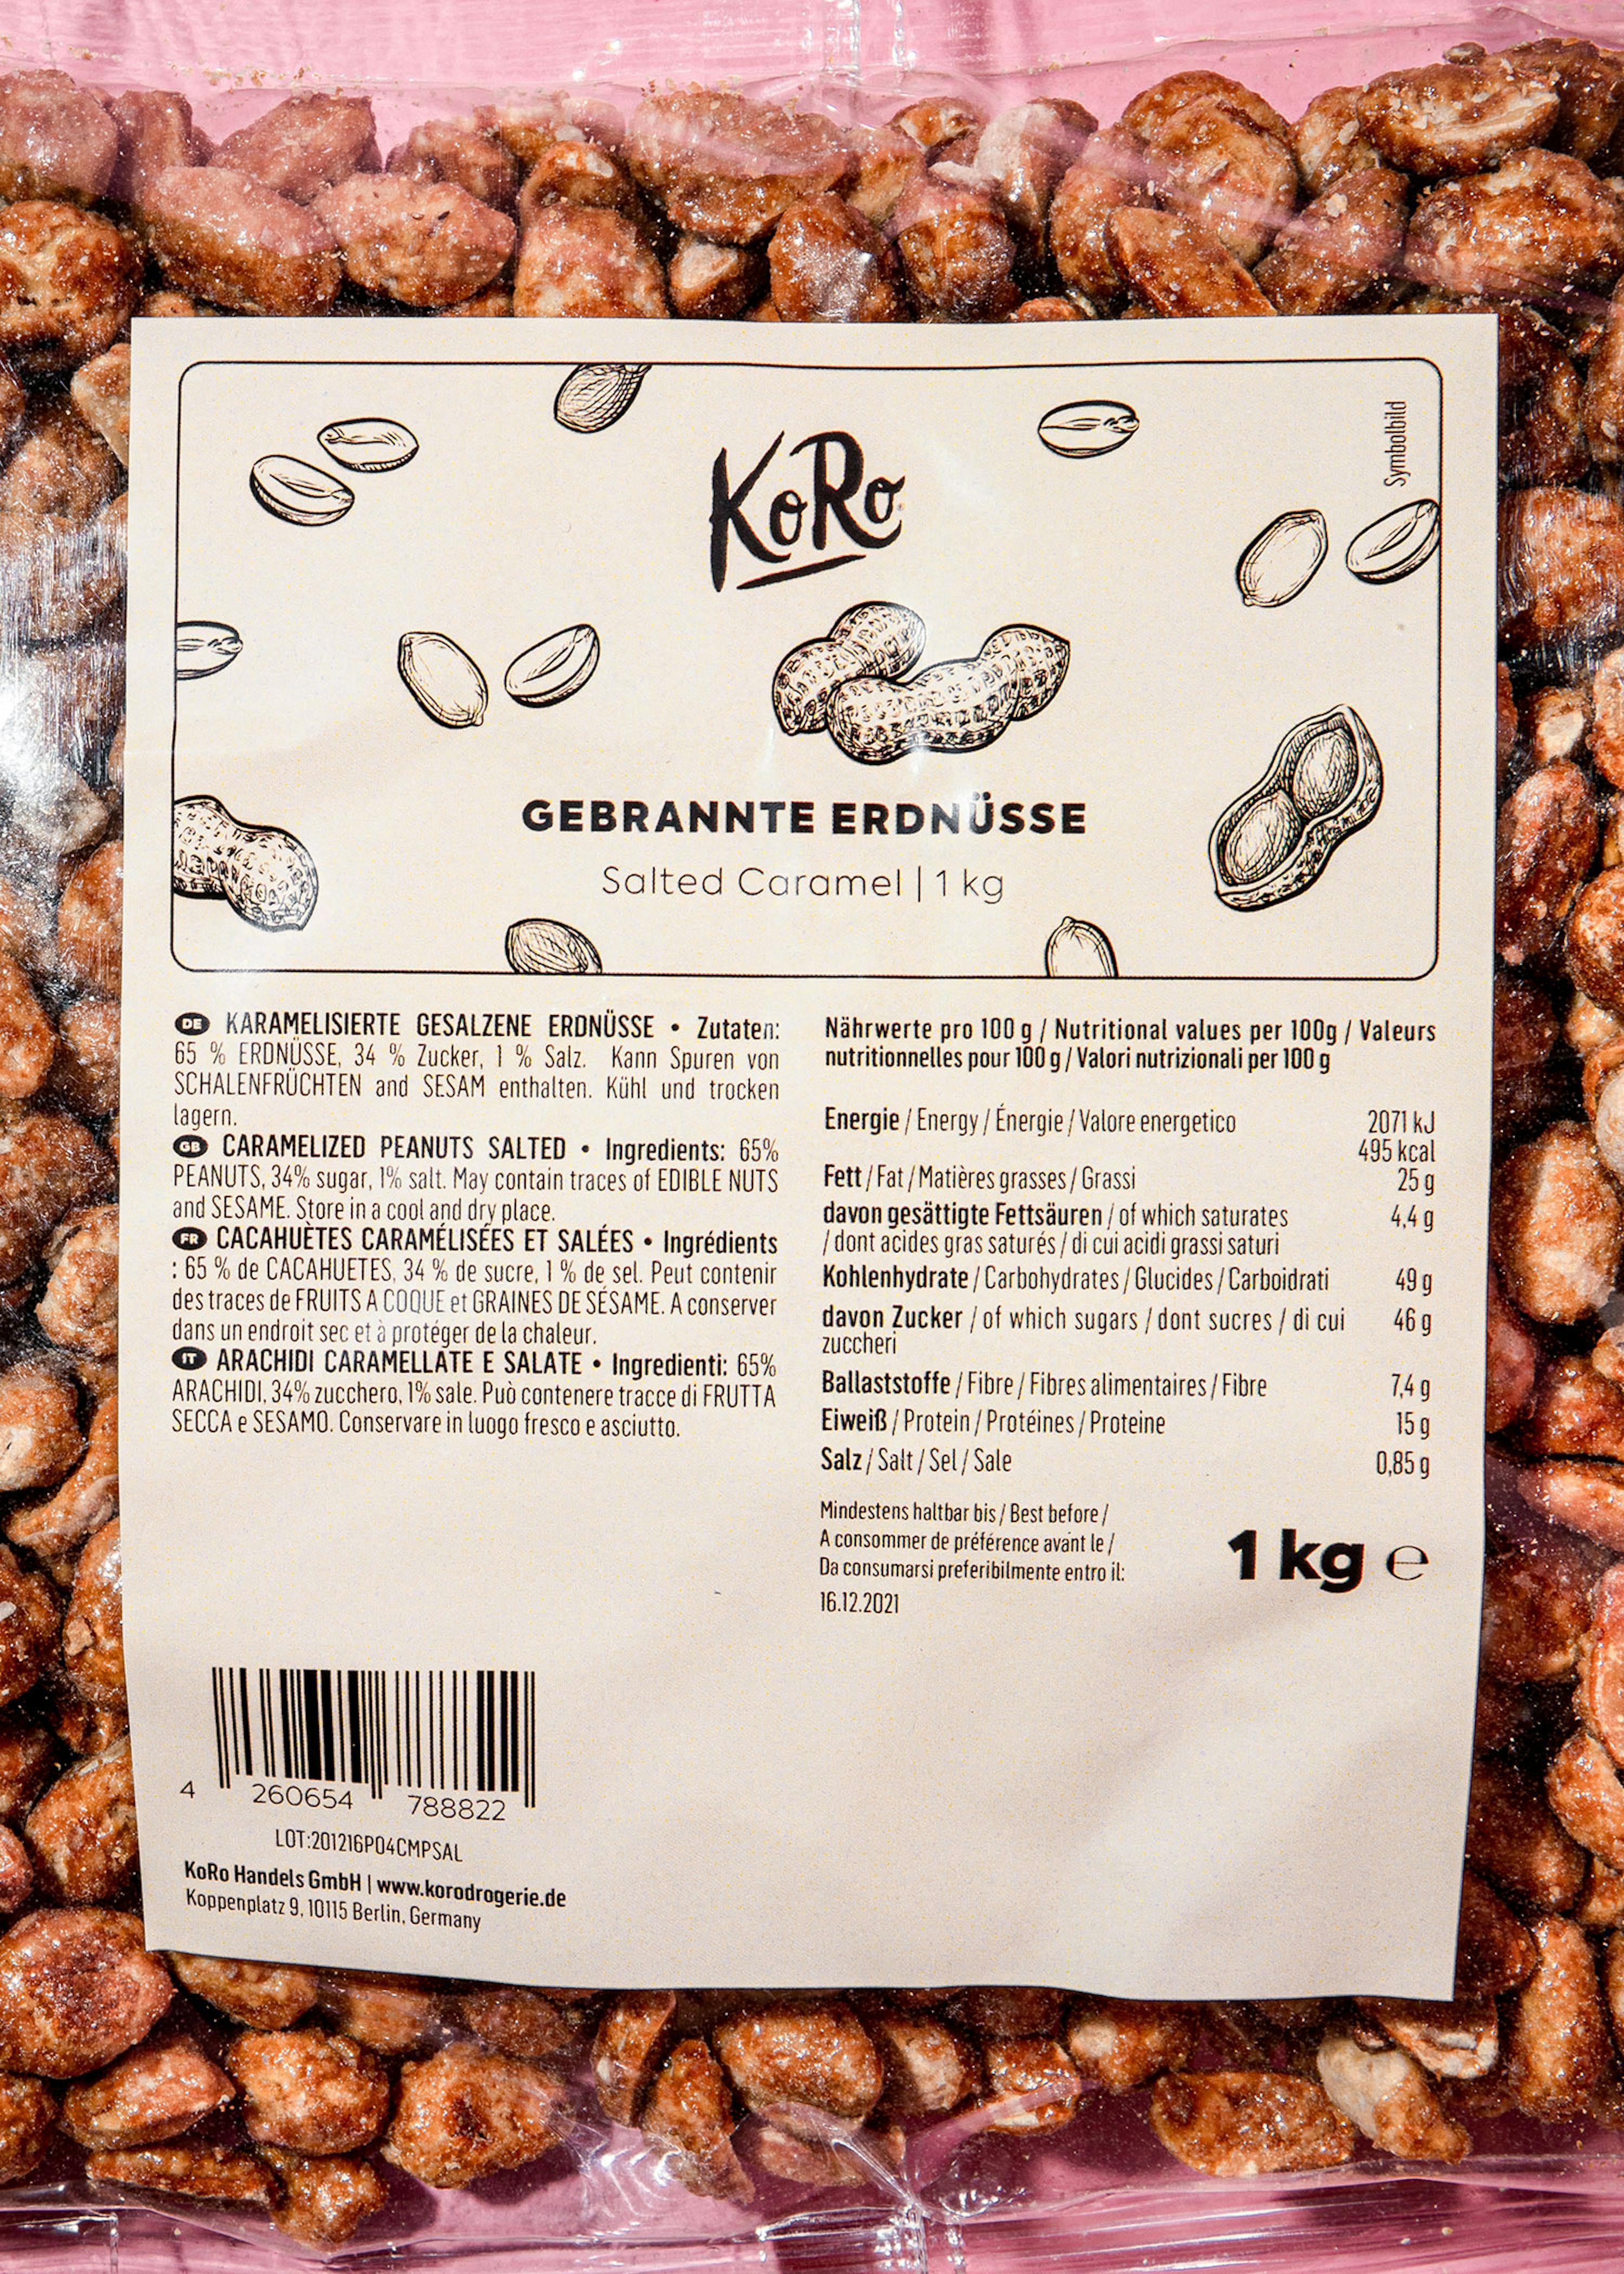 Cacahuètes décortiquées - Sac de 5 kg